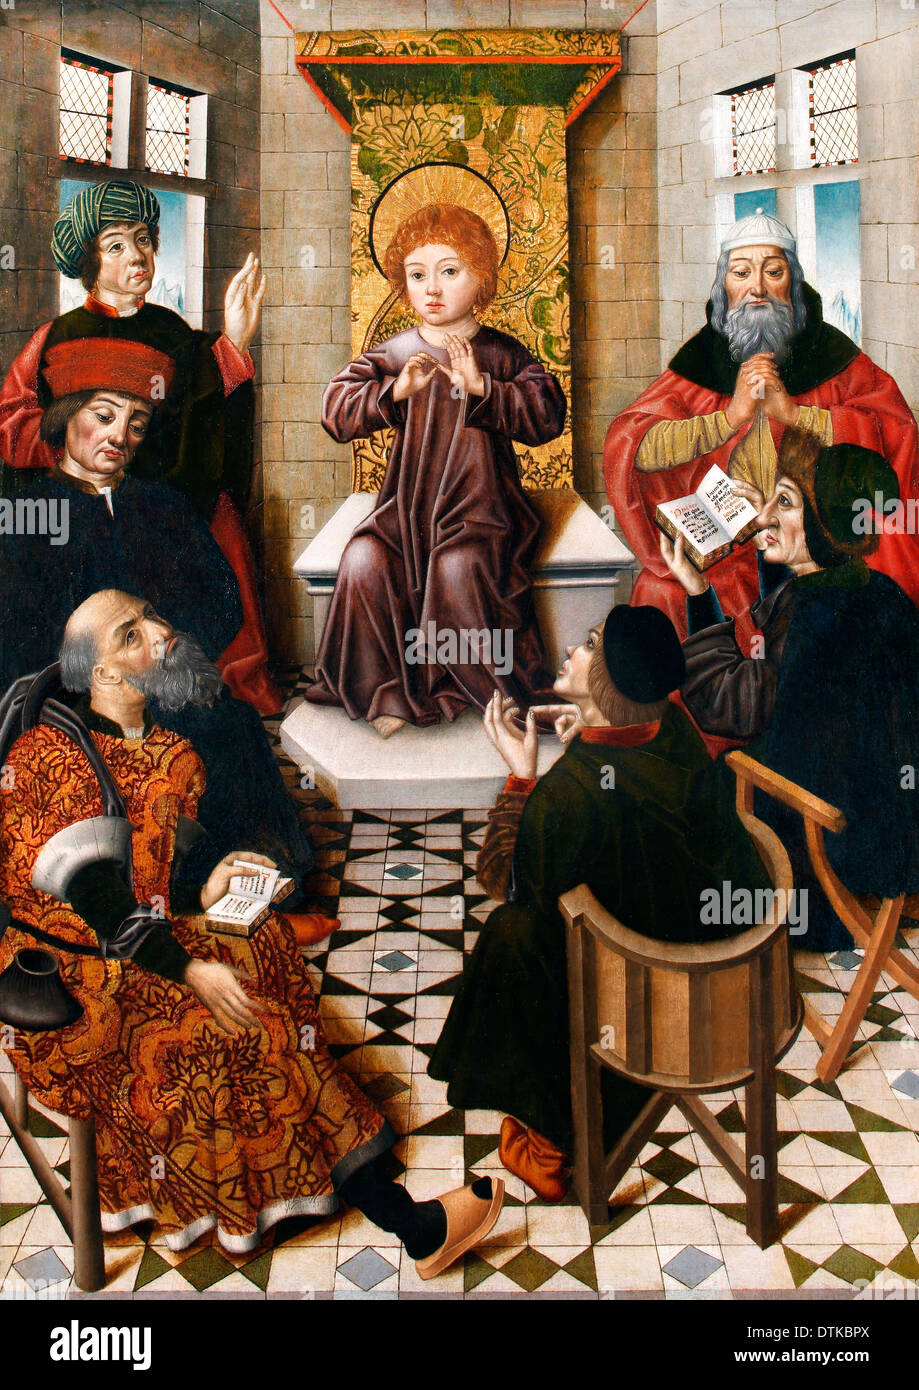 Diego de la Cruz, le Christ Enfant parmi les docteurs 1476-1500 Huile sur toile. Musée de Lazaro Galdiano, Madrid, Espagne. Banque D'Images